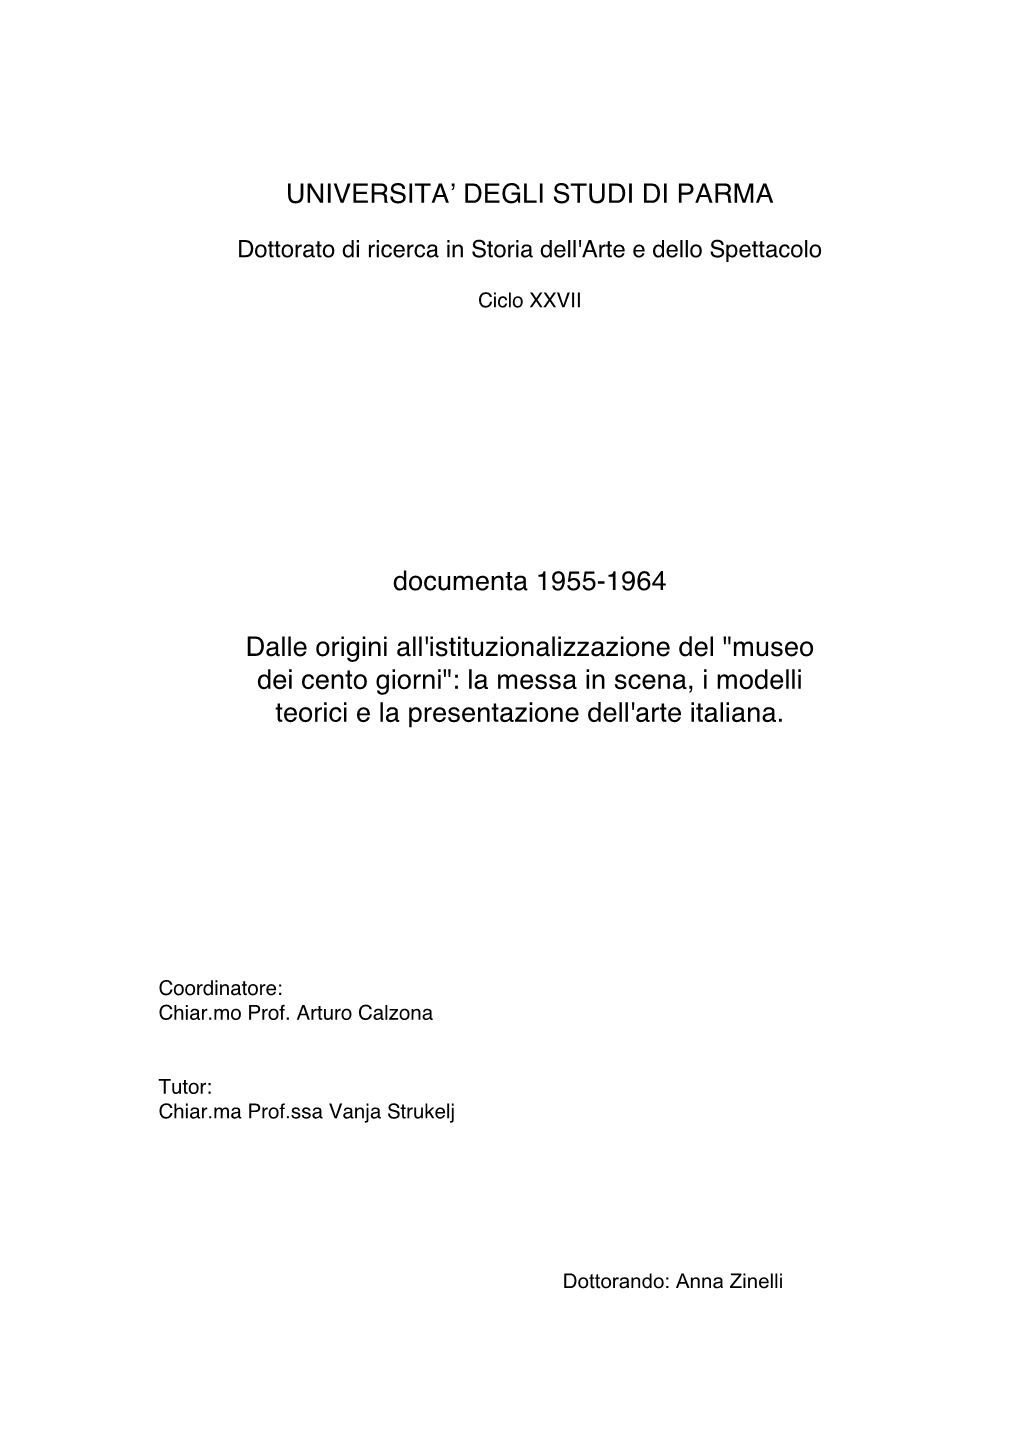 Documenta 1955-1964 Dalle Origini All'istituzionalizzazione Del "Museo Dei Cento Giorni": La Messa in Scena, I Modelli